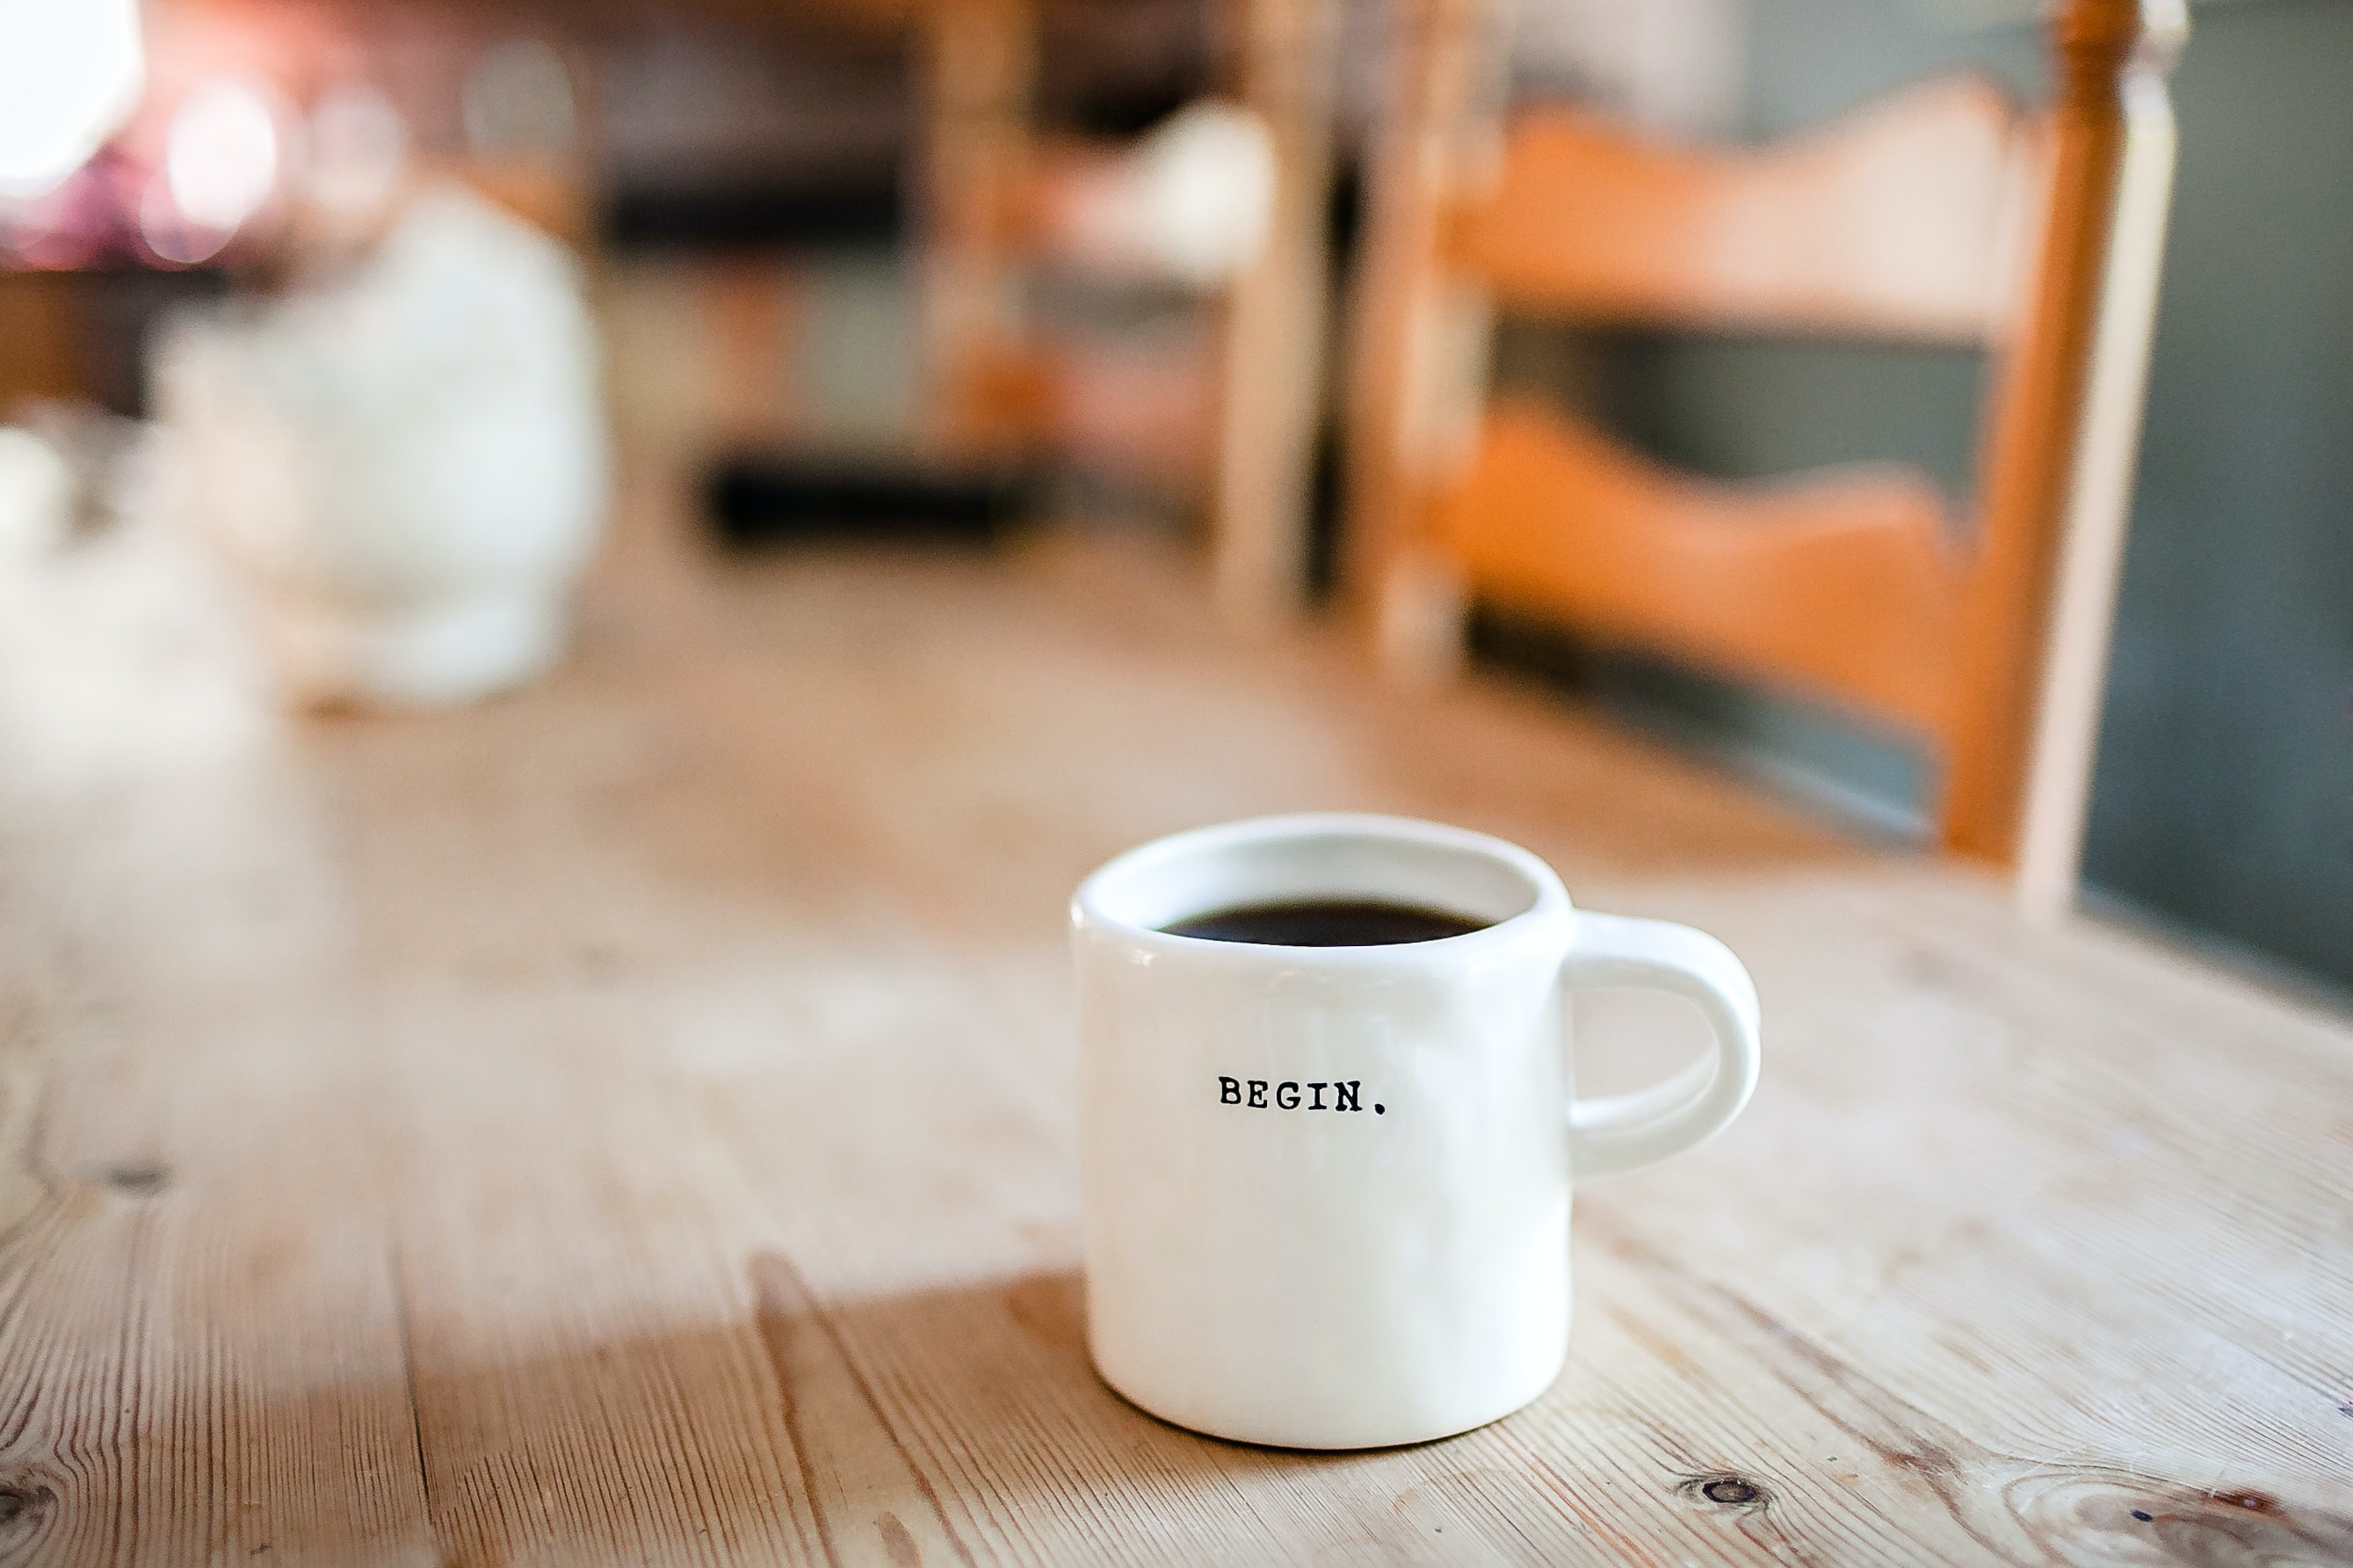 एक कप जिसे “बिगिन” शब्द के साथ अंकित किया गया है, जो एक मेज पर कॉफी से भरा हुआ है।